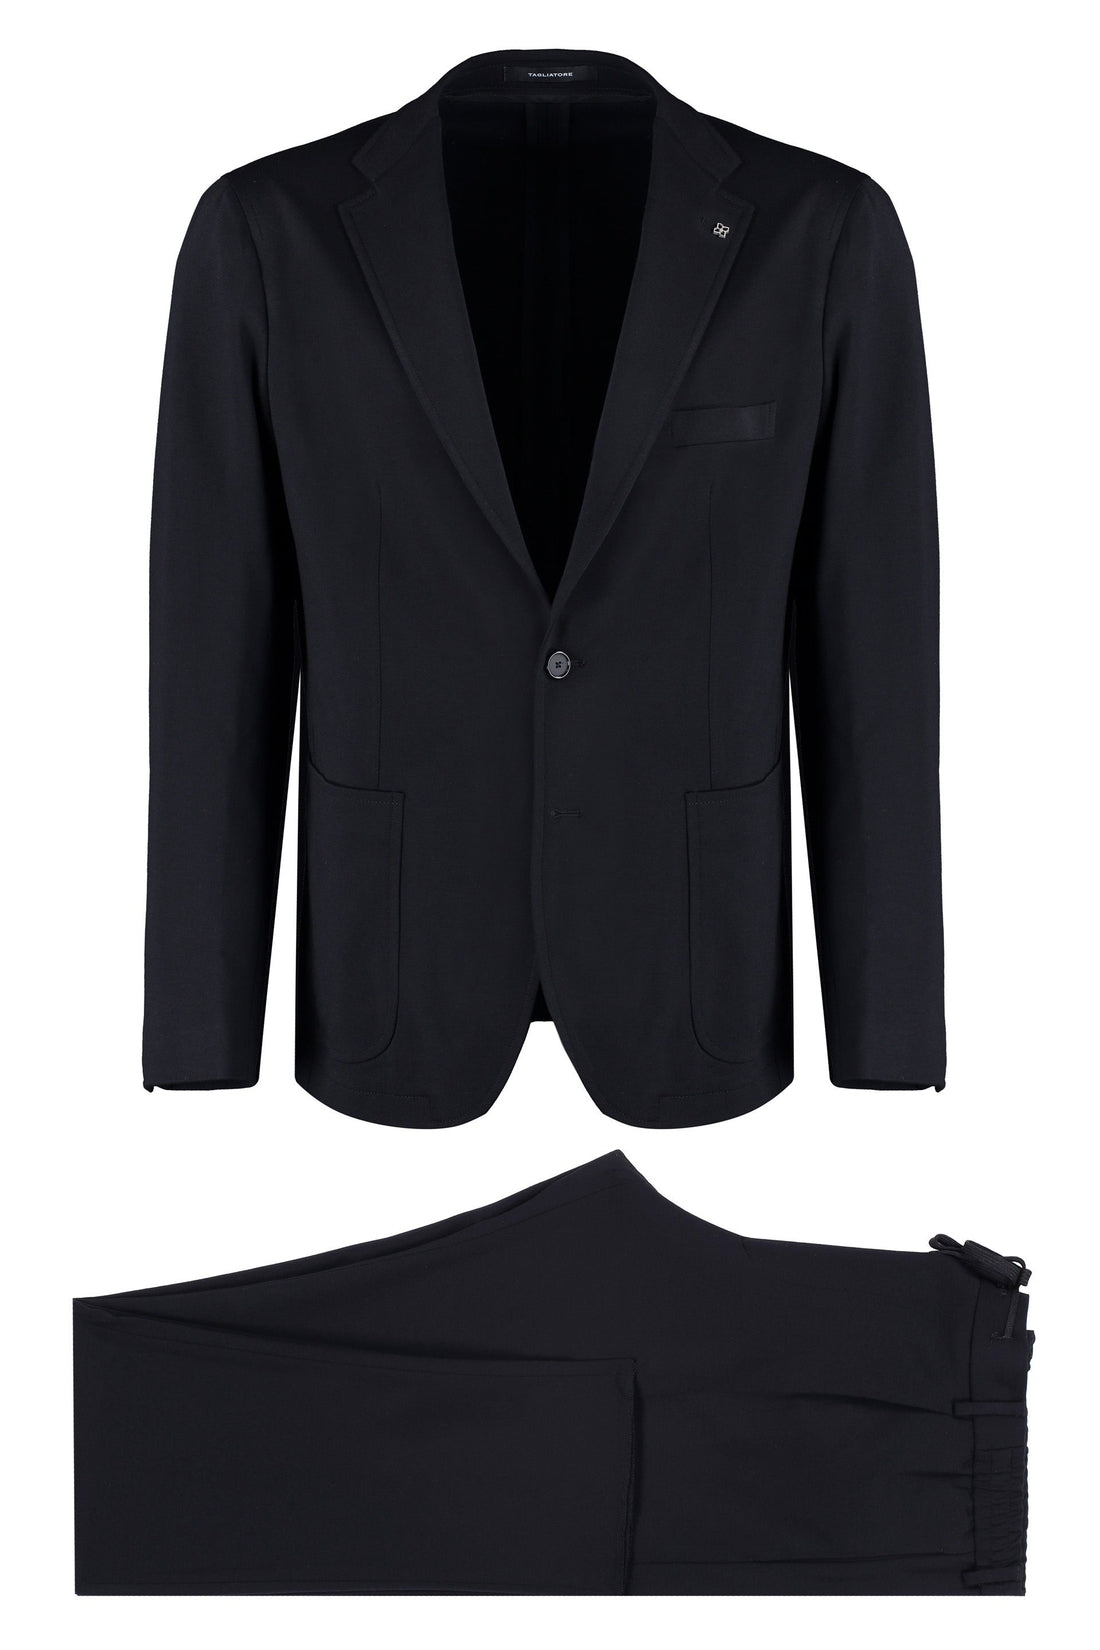 Tagliatore-OUTLET-SALE-Two-piece suit-ARCHIVIST